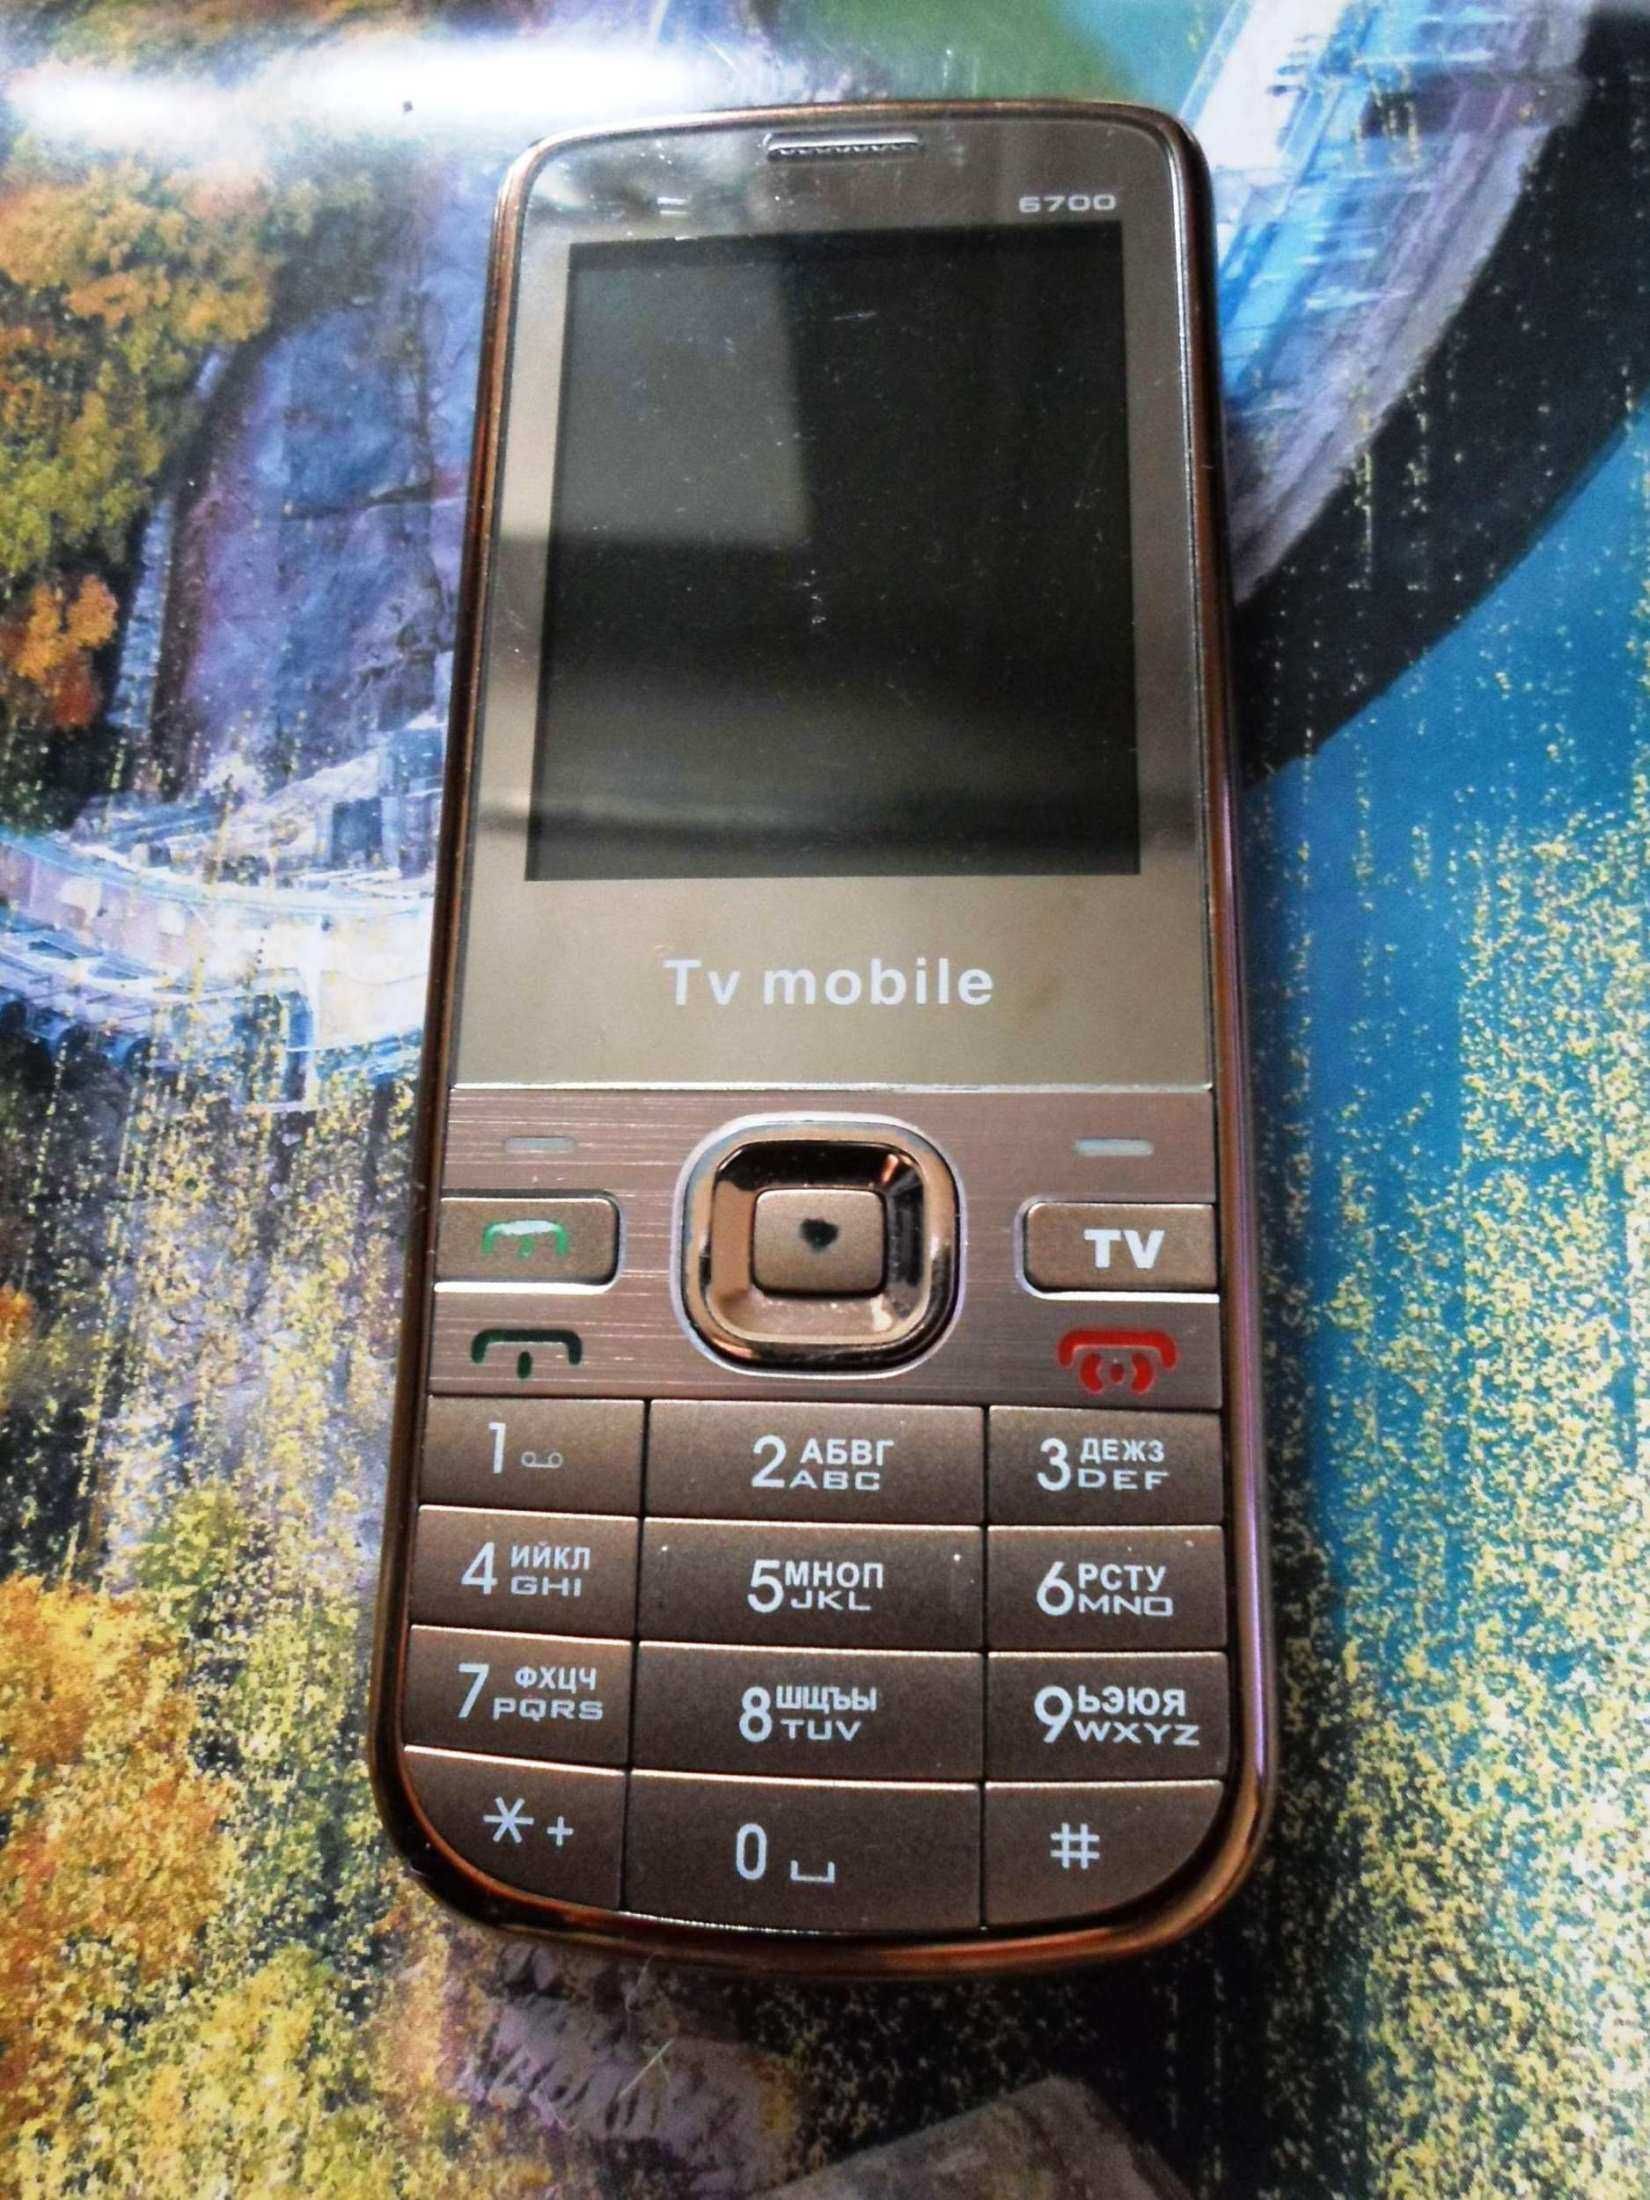 Nokia 6700, 2760, Samsung GT-E1150